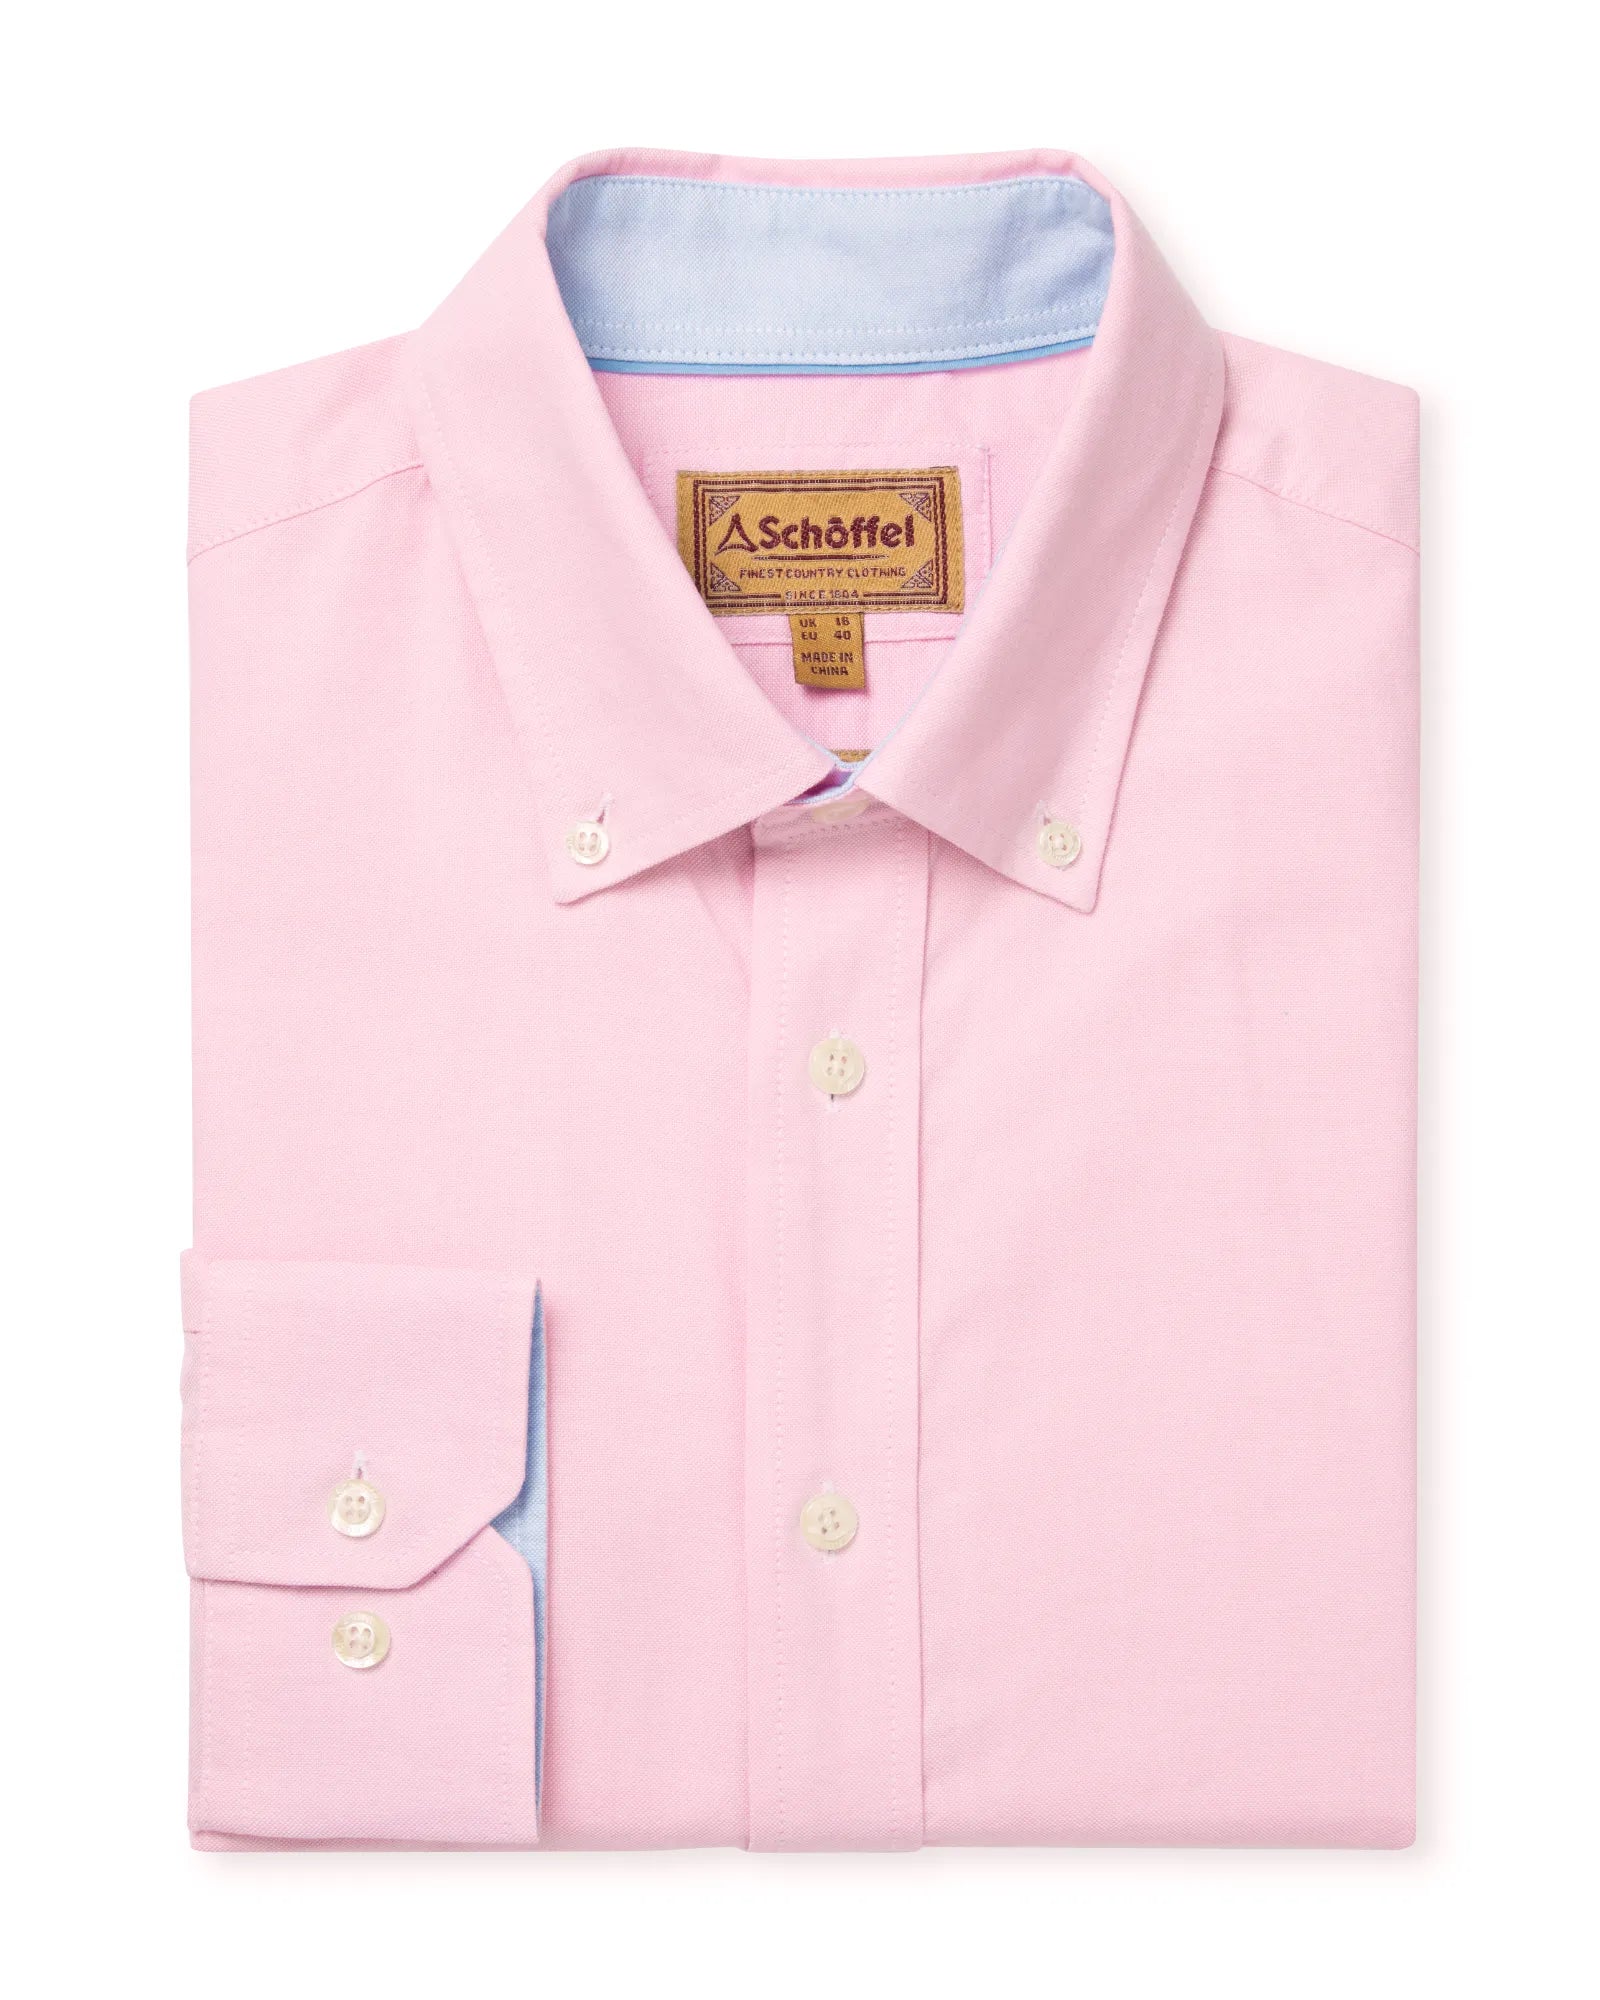 Holt Soft Oxford Tailored Shirt - Light Pink